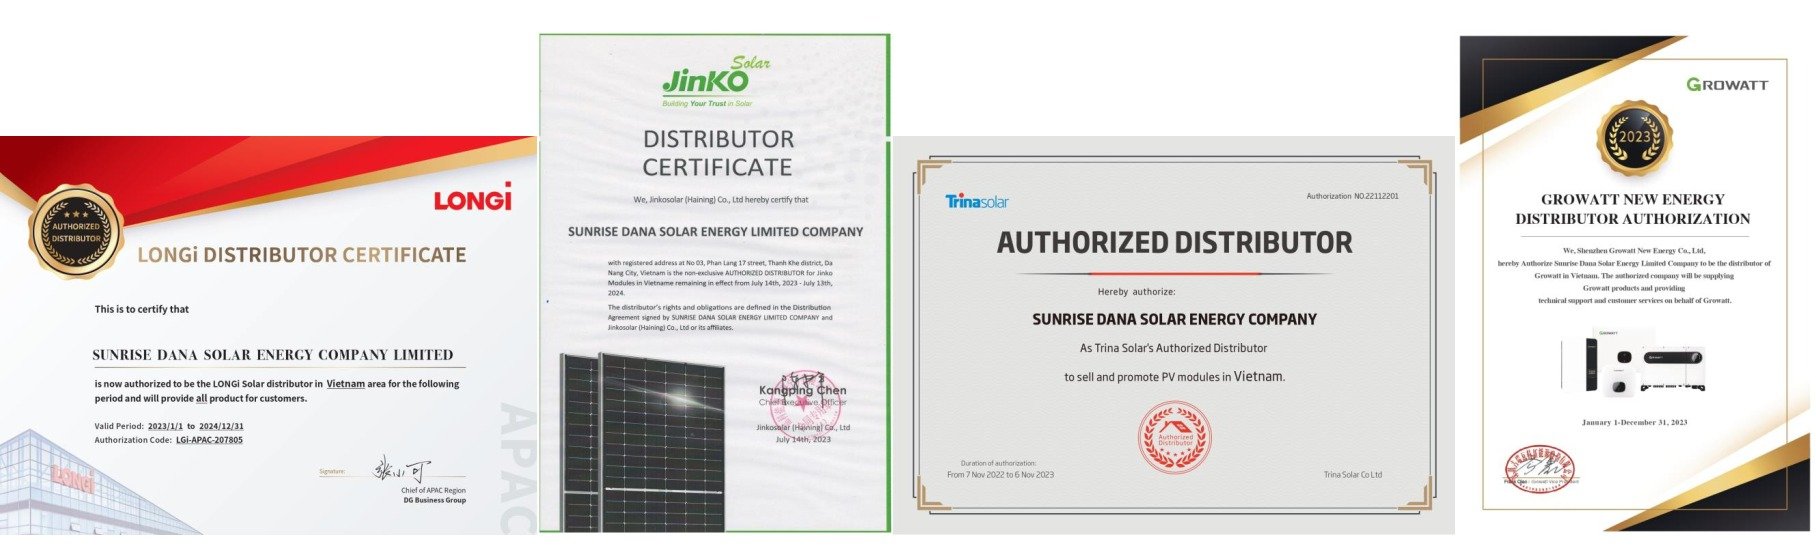 Sunrise Dana – Nhà phân phối Solar Power hàng đầu tại Việt Nam!